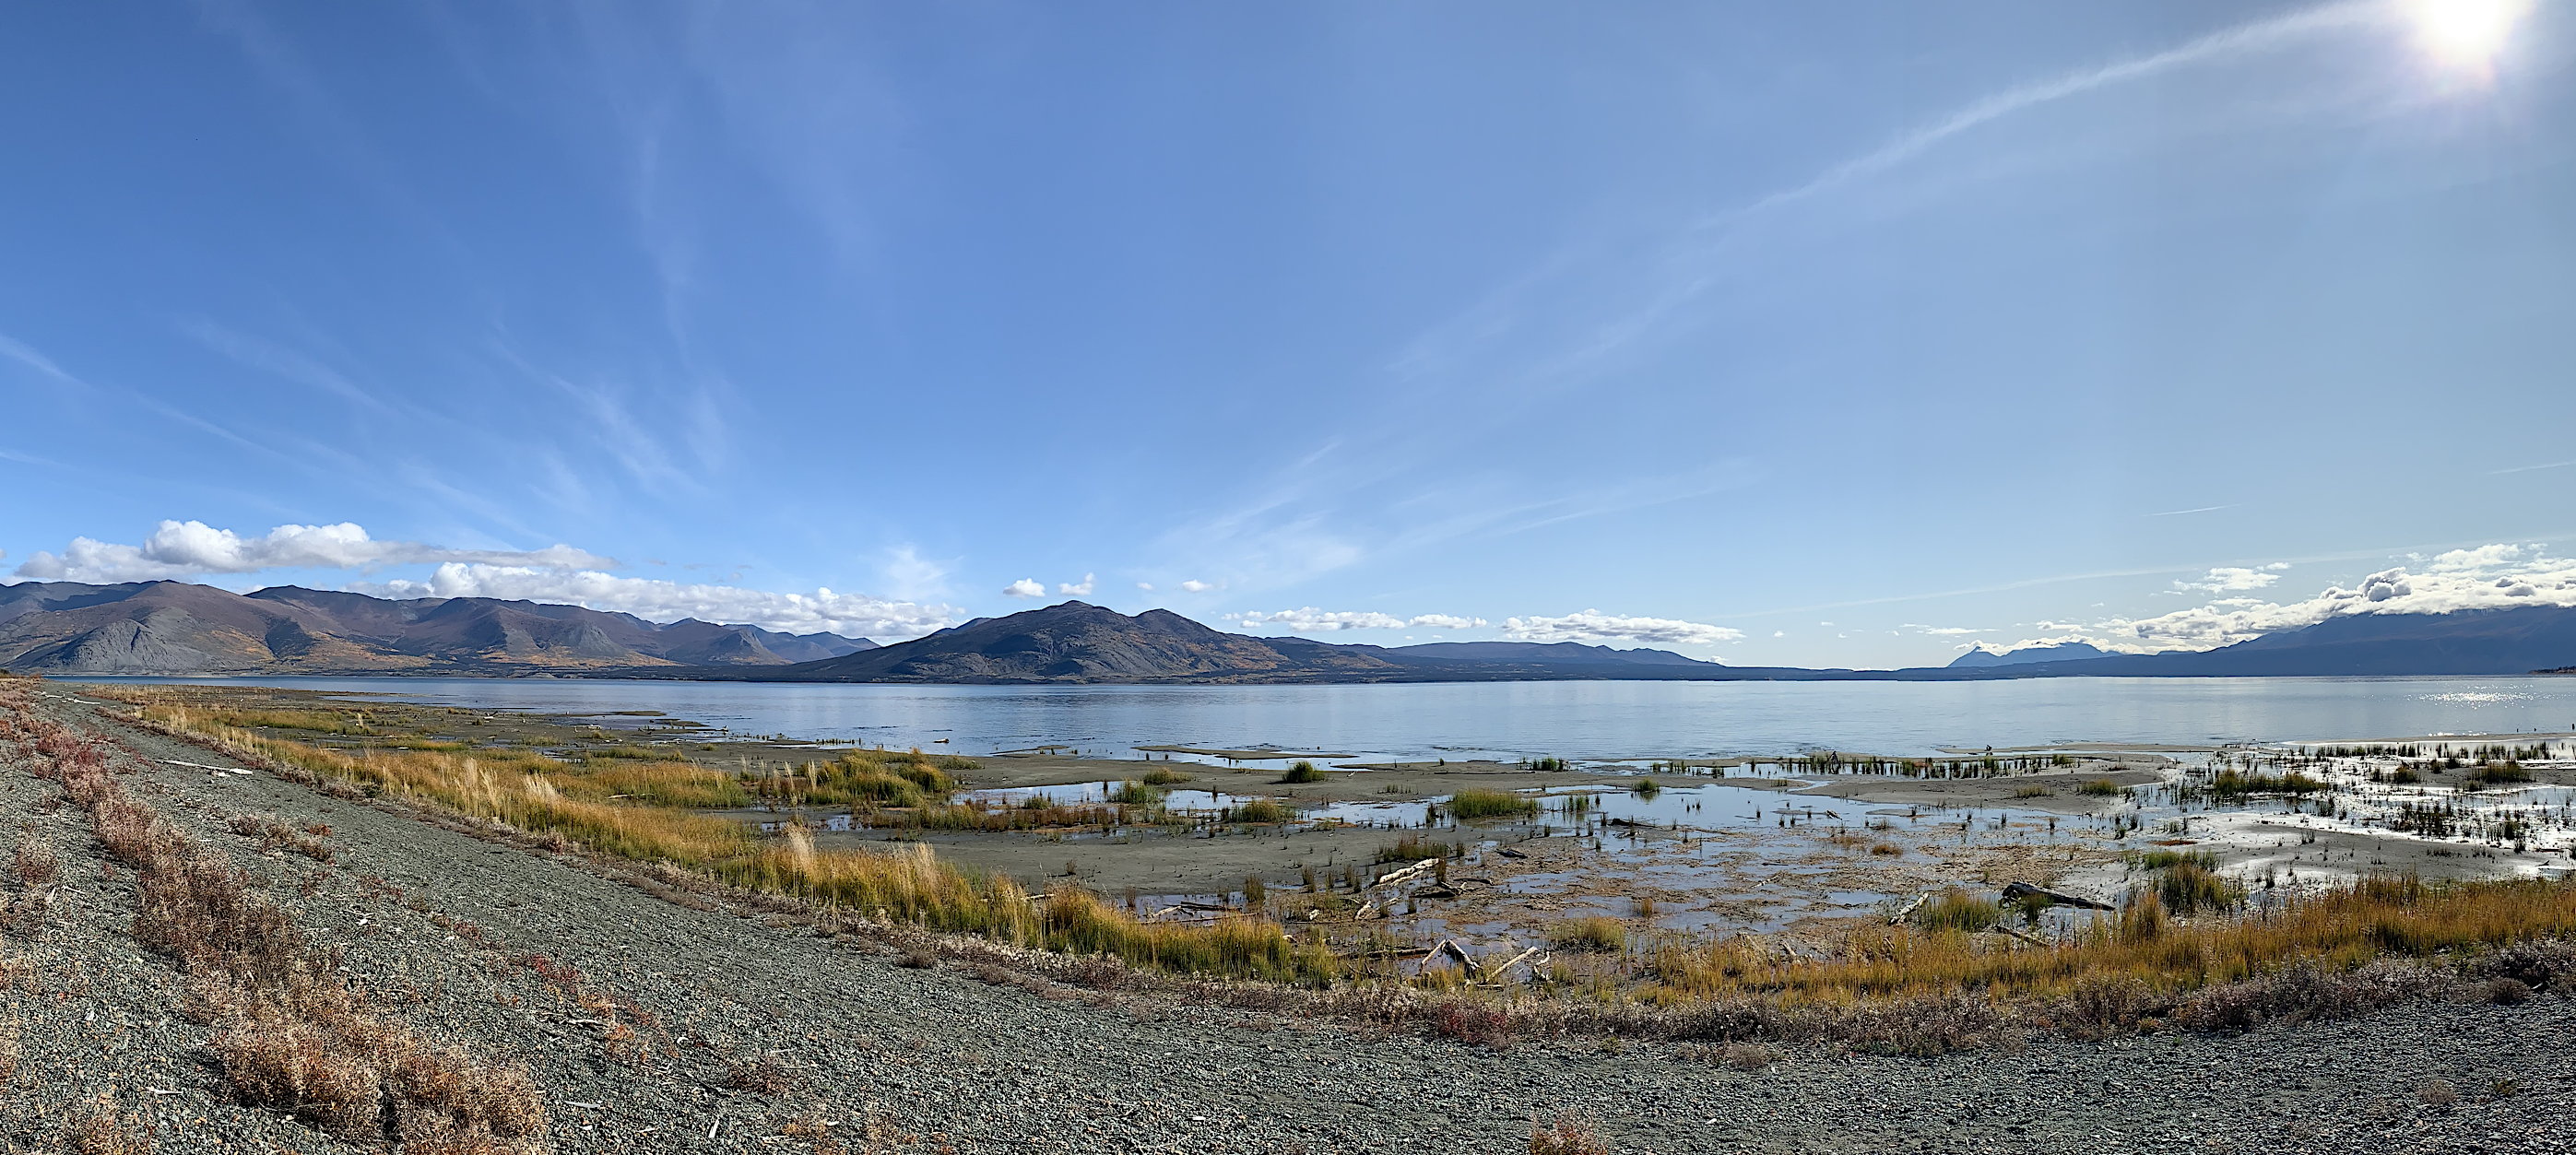 Panoramafoto über den oberen Teil des Kluane Lake